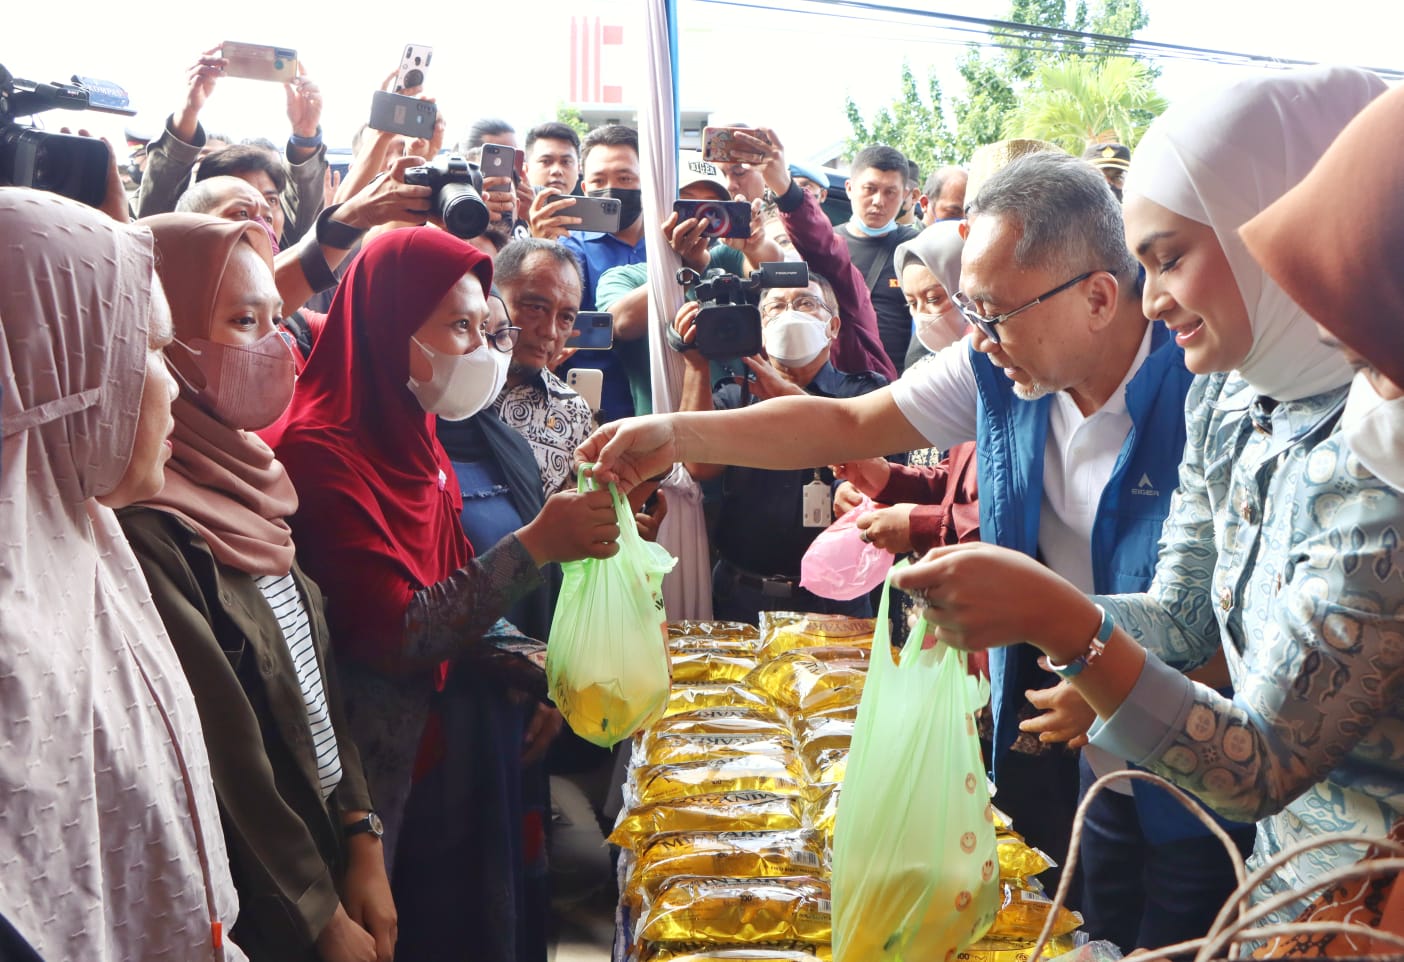 Menteri Perdagangan Tinjau Pasar Murah di Wilayah Kota Bandar Lampung, Pastikan Ketersediaan Minyak dan Harga 